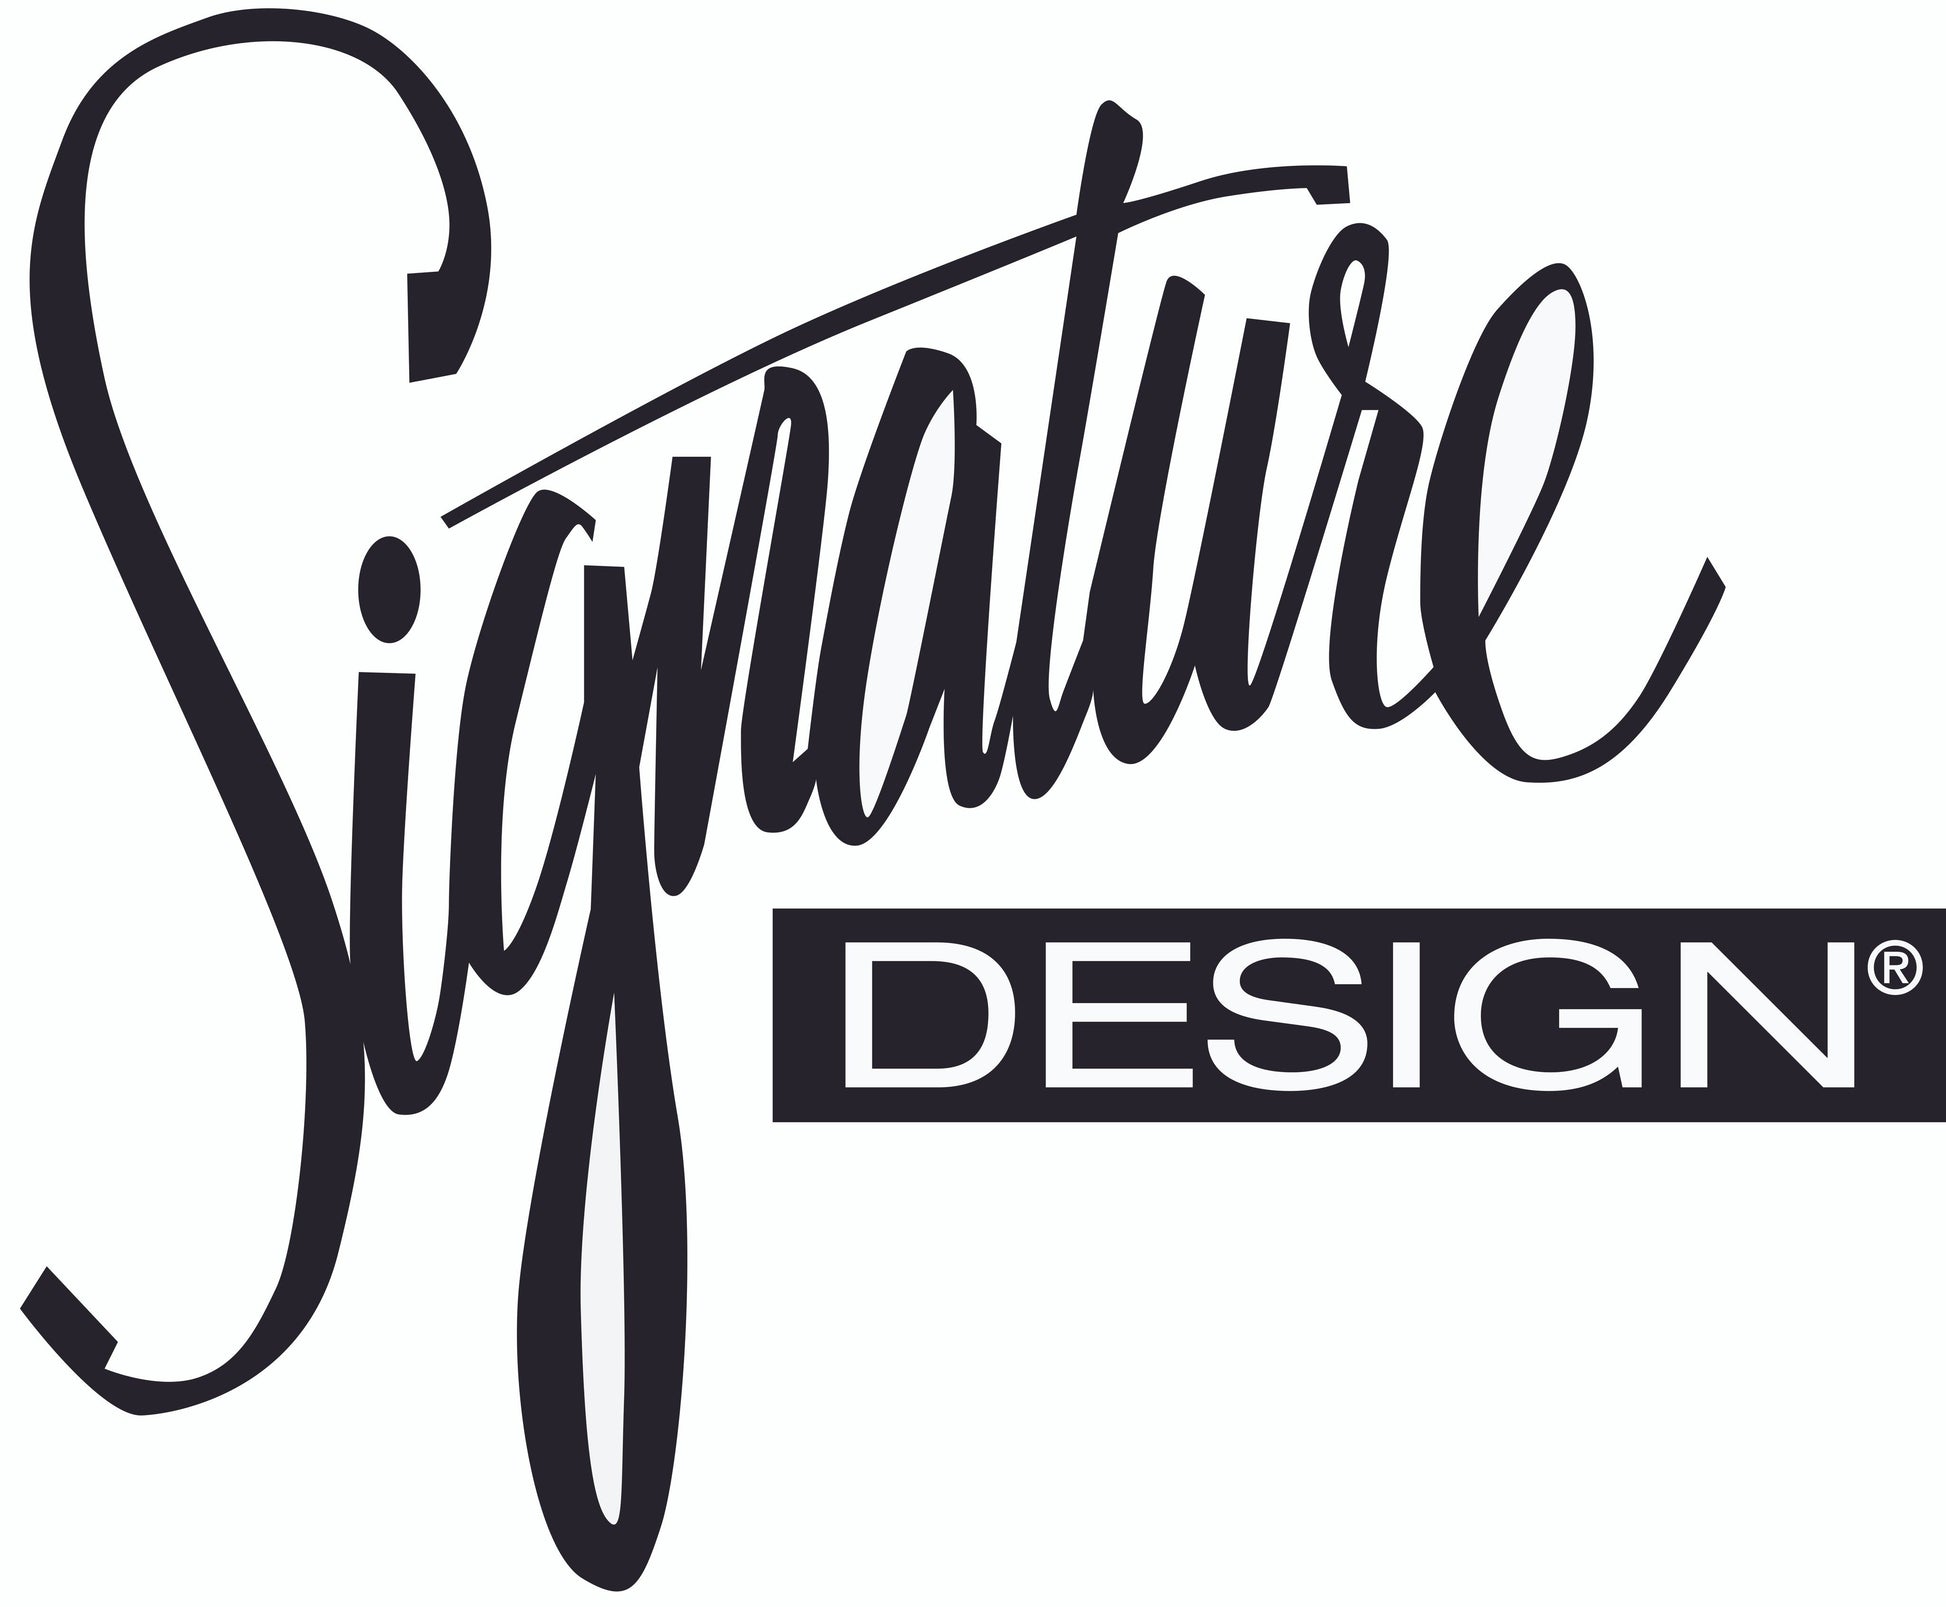 Baraga L-Desk Signature Design by Ashley®